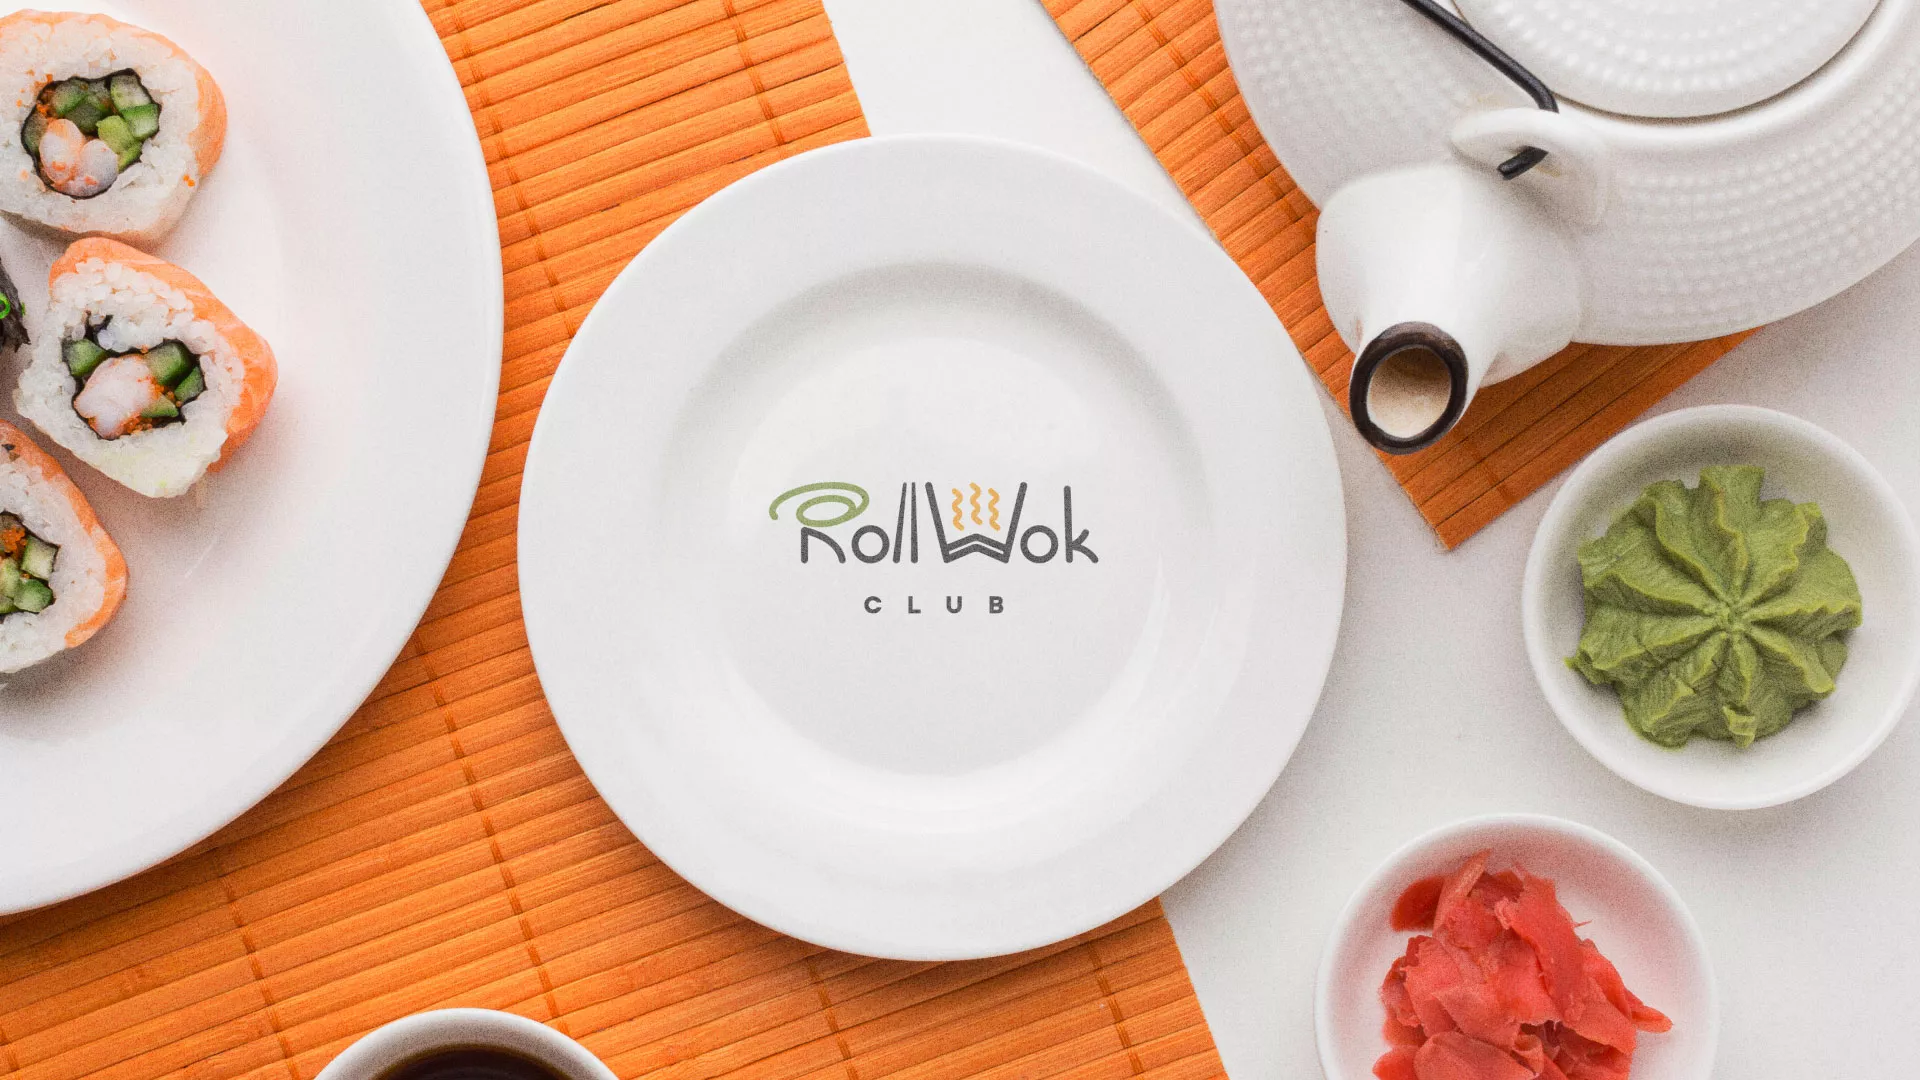 Разработка логотипа и фирменного стиля суши-бара «Roll Wok Club» в Железноводске